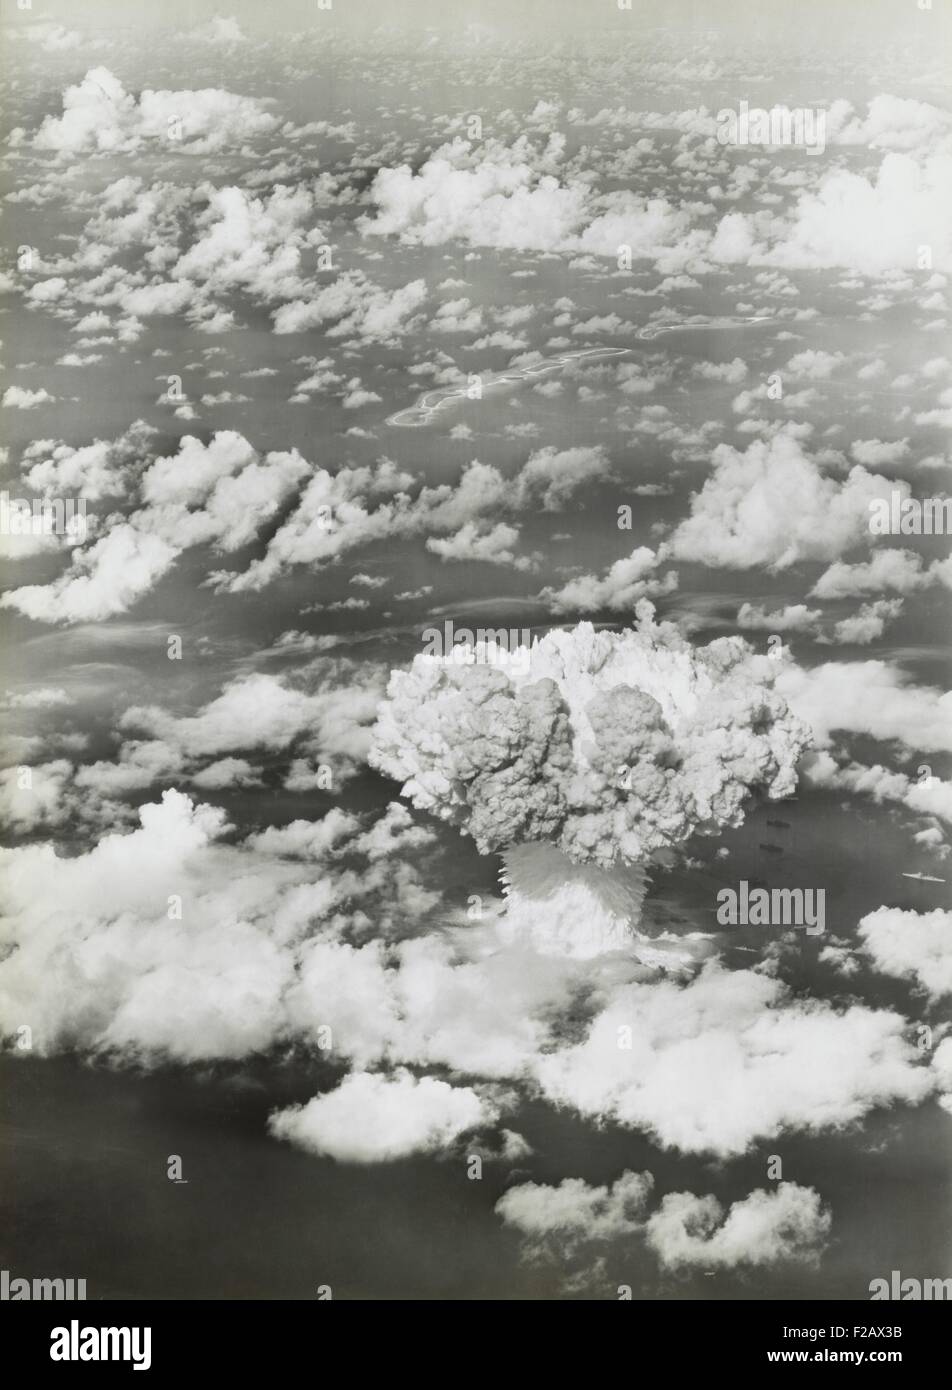 Le test de fonctionnement de BAKER Crossroads, 25 juillet 1946. L'aérolithe et champignon atomique et de la colonne d'eau sortir de la surface de l'océan. BAKER avait la force de 20 000 tonnes de TNT. (BSLOC 2015 2 6) Banque D'Images